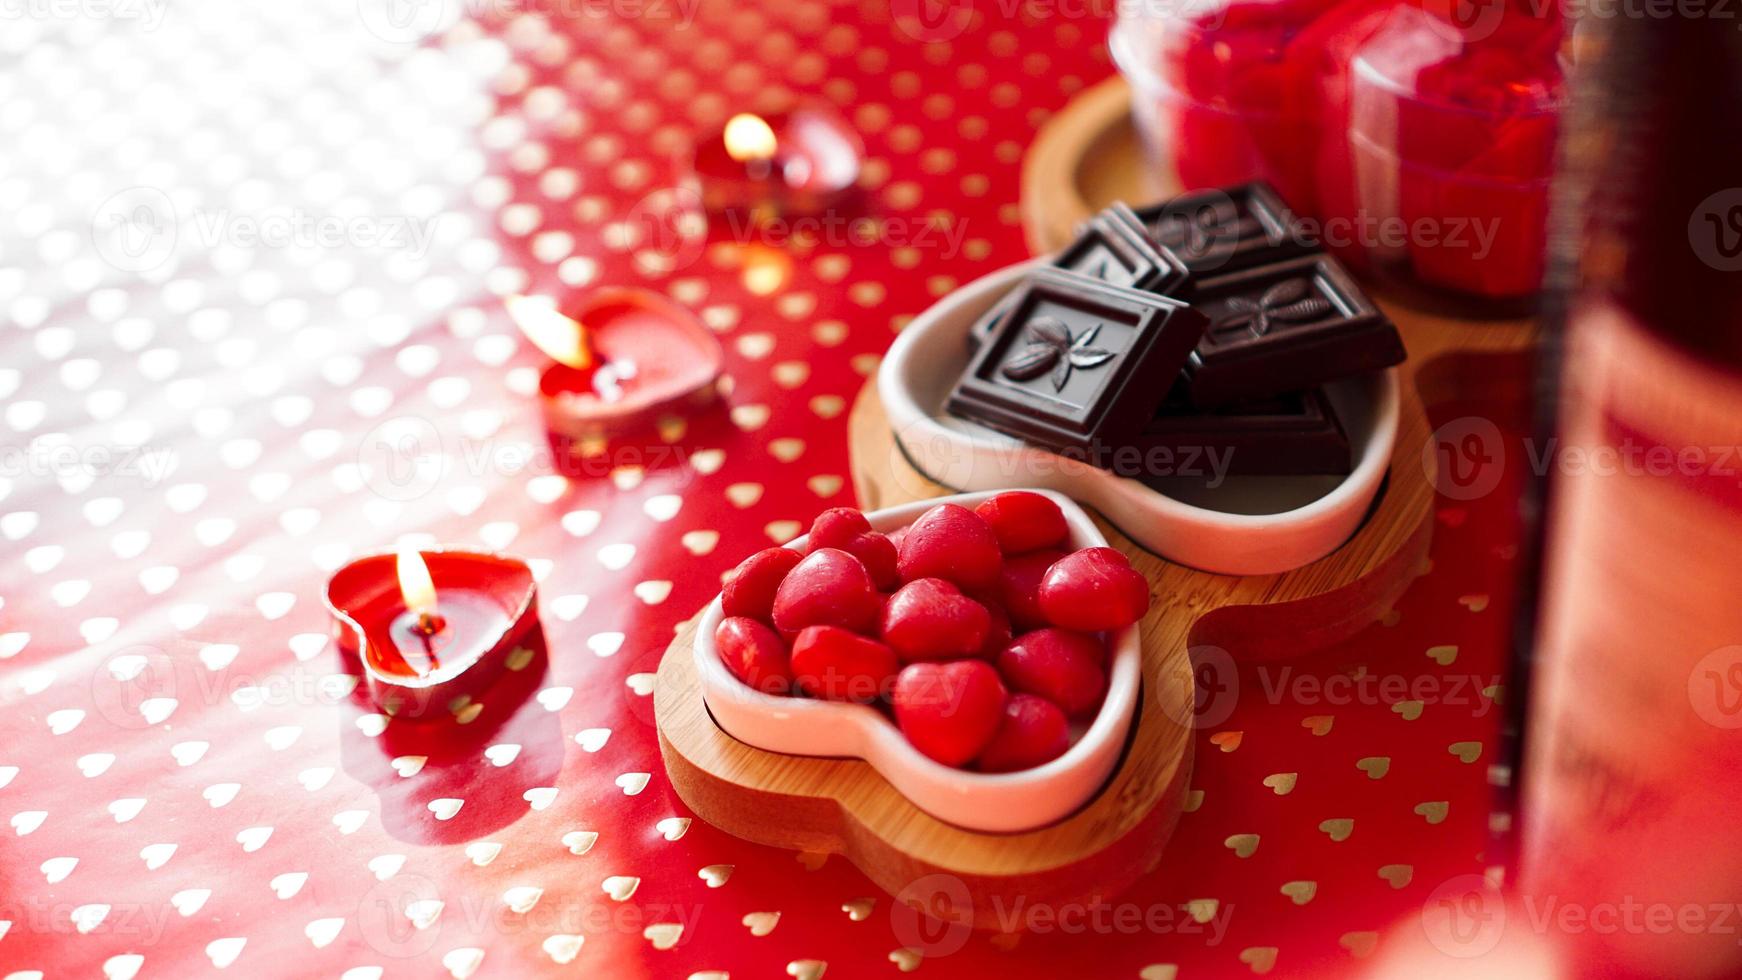 Pralinen und Süßigkeiten auf herzförmigen Tellern foto